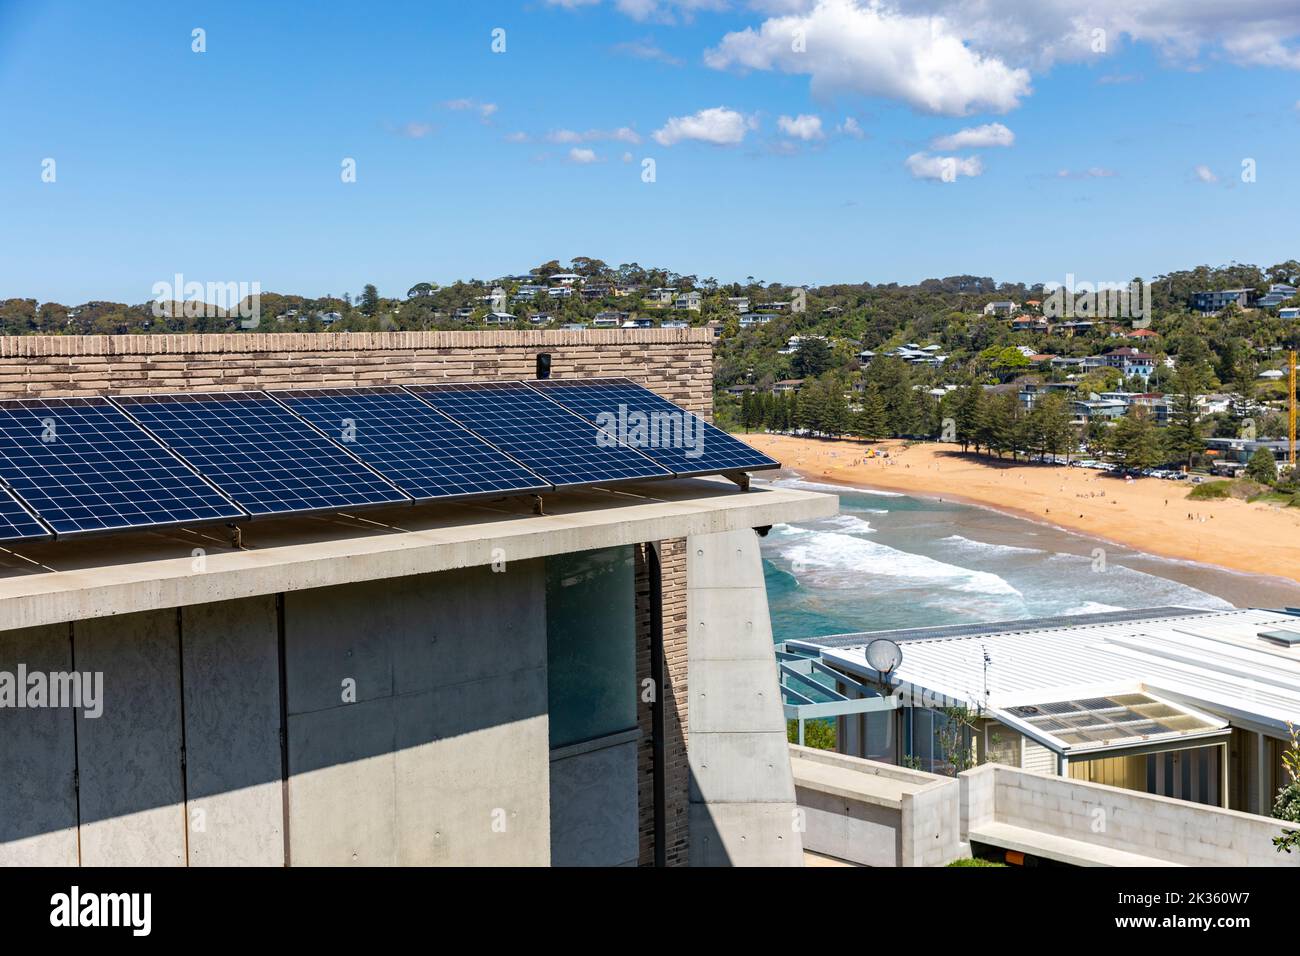 Paneles solares PV instalado en una lujosa casa de playa en Whale Beach suburbio de Sydney, Nueva Gales del Sur, Australia, con vistas al océano y a la playa Foto de stock